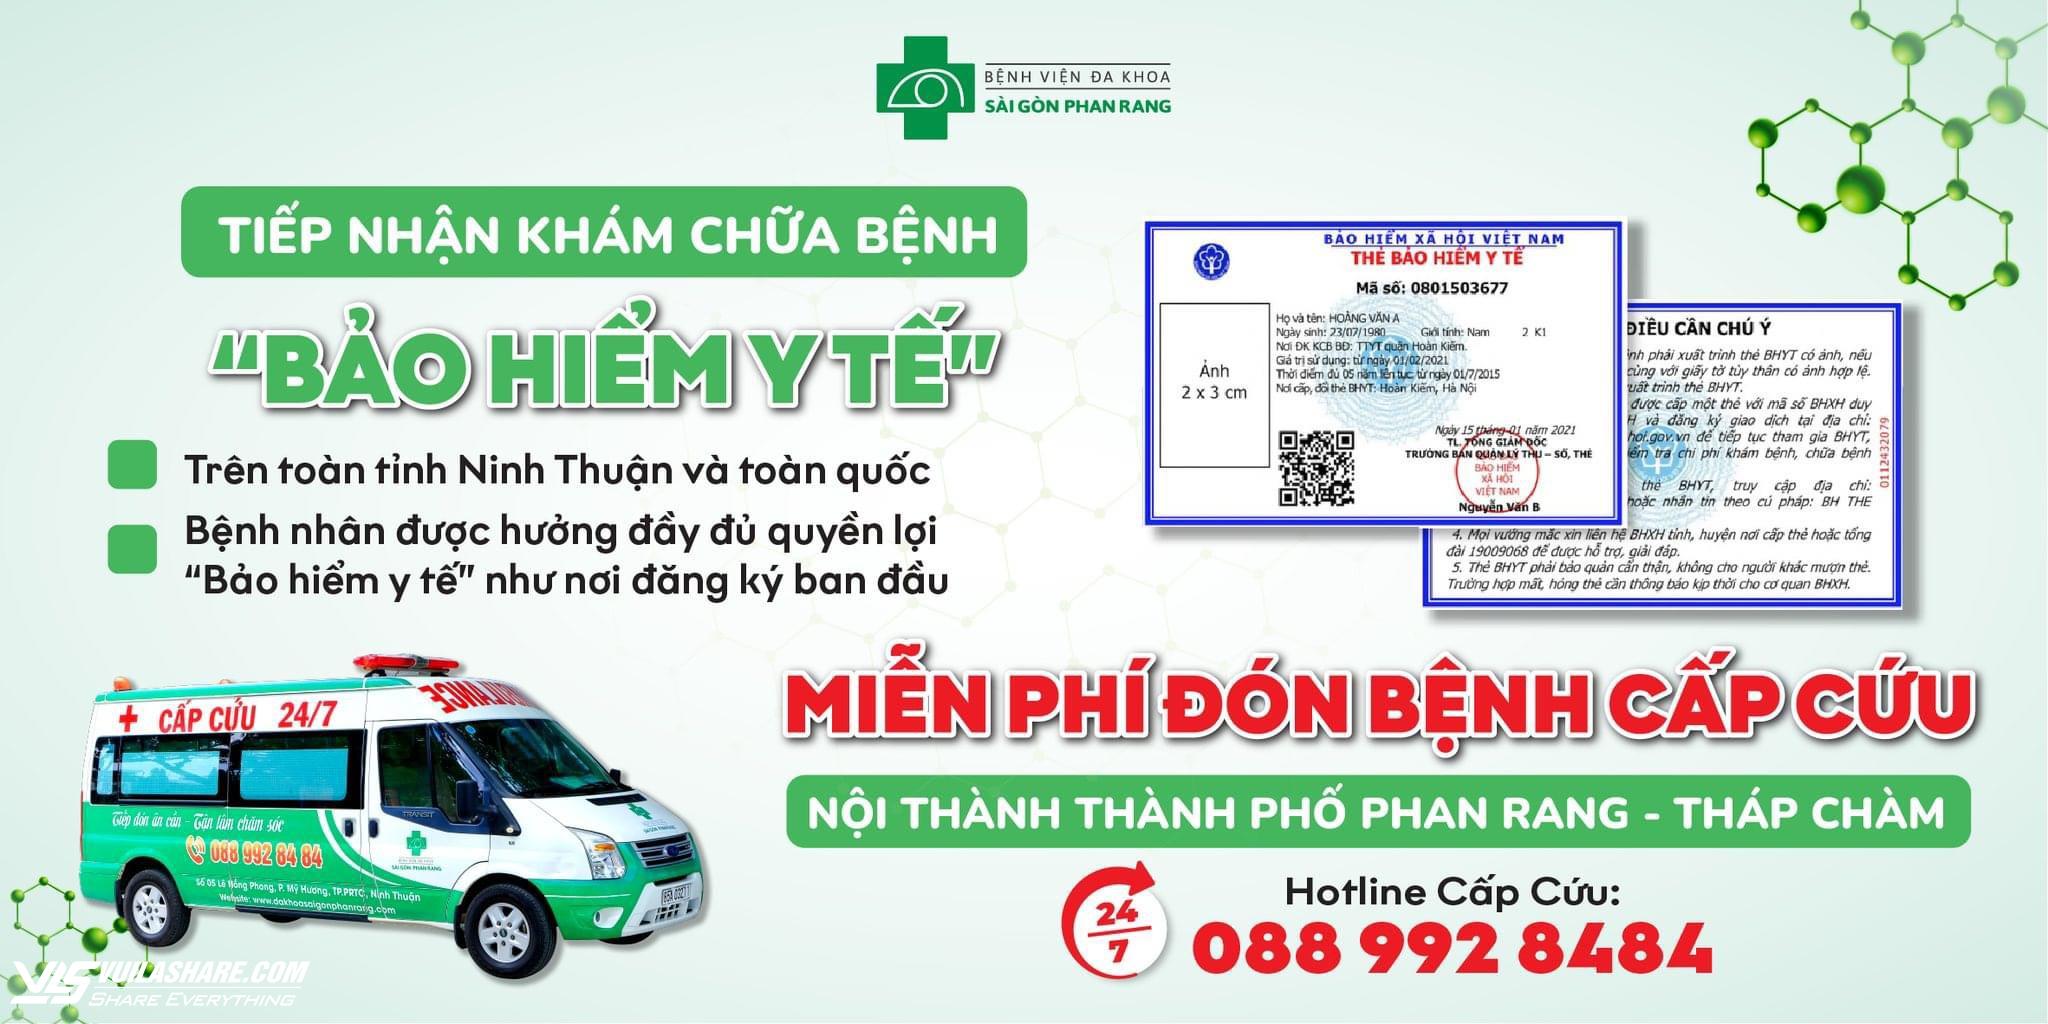 Tiếp nhận khám chữa bệnh BHYT trên toàn tỉnh Ninh Thuận và toàn quốc- Ảnh 1.